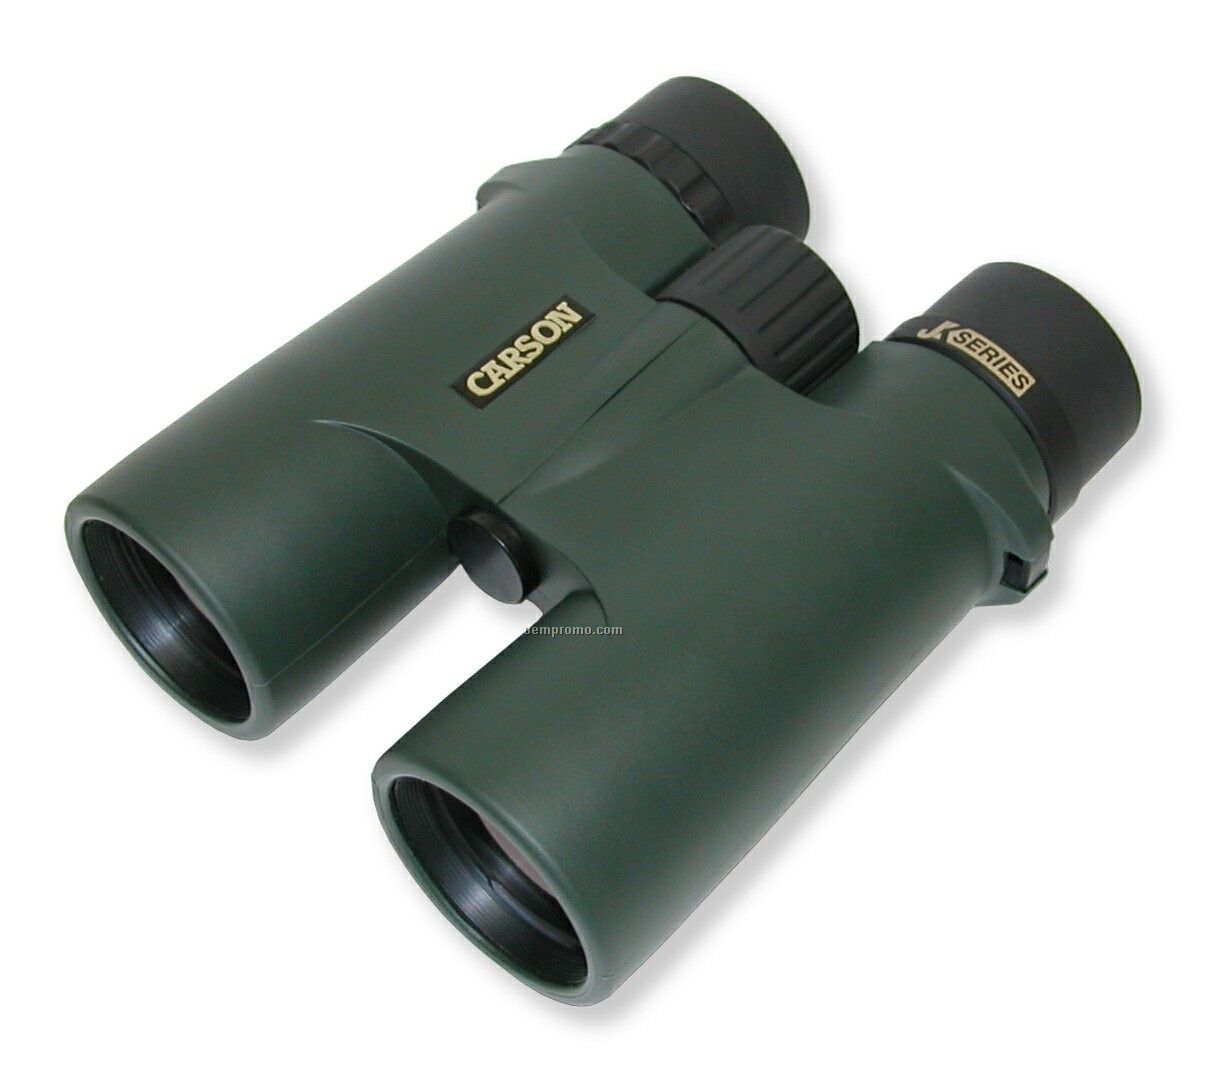 Jk Series Full Size Binoculars (8x42mm)